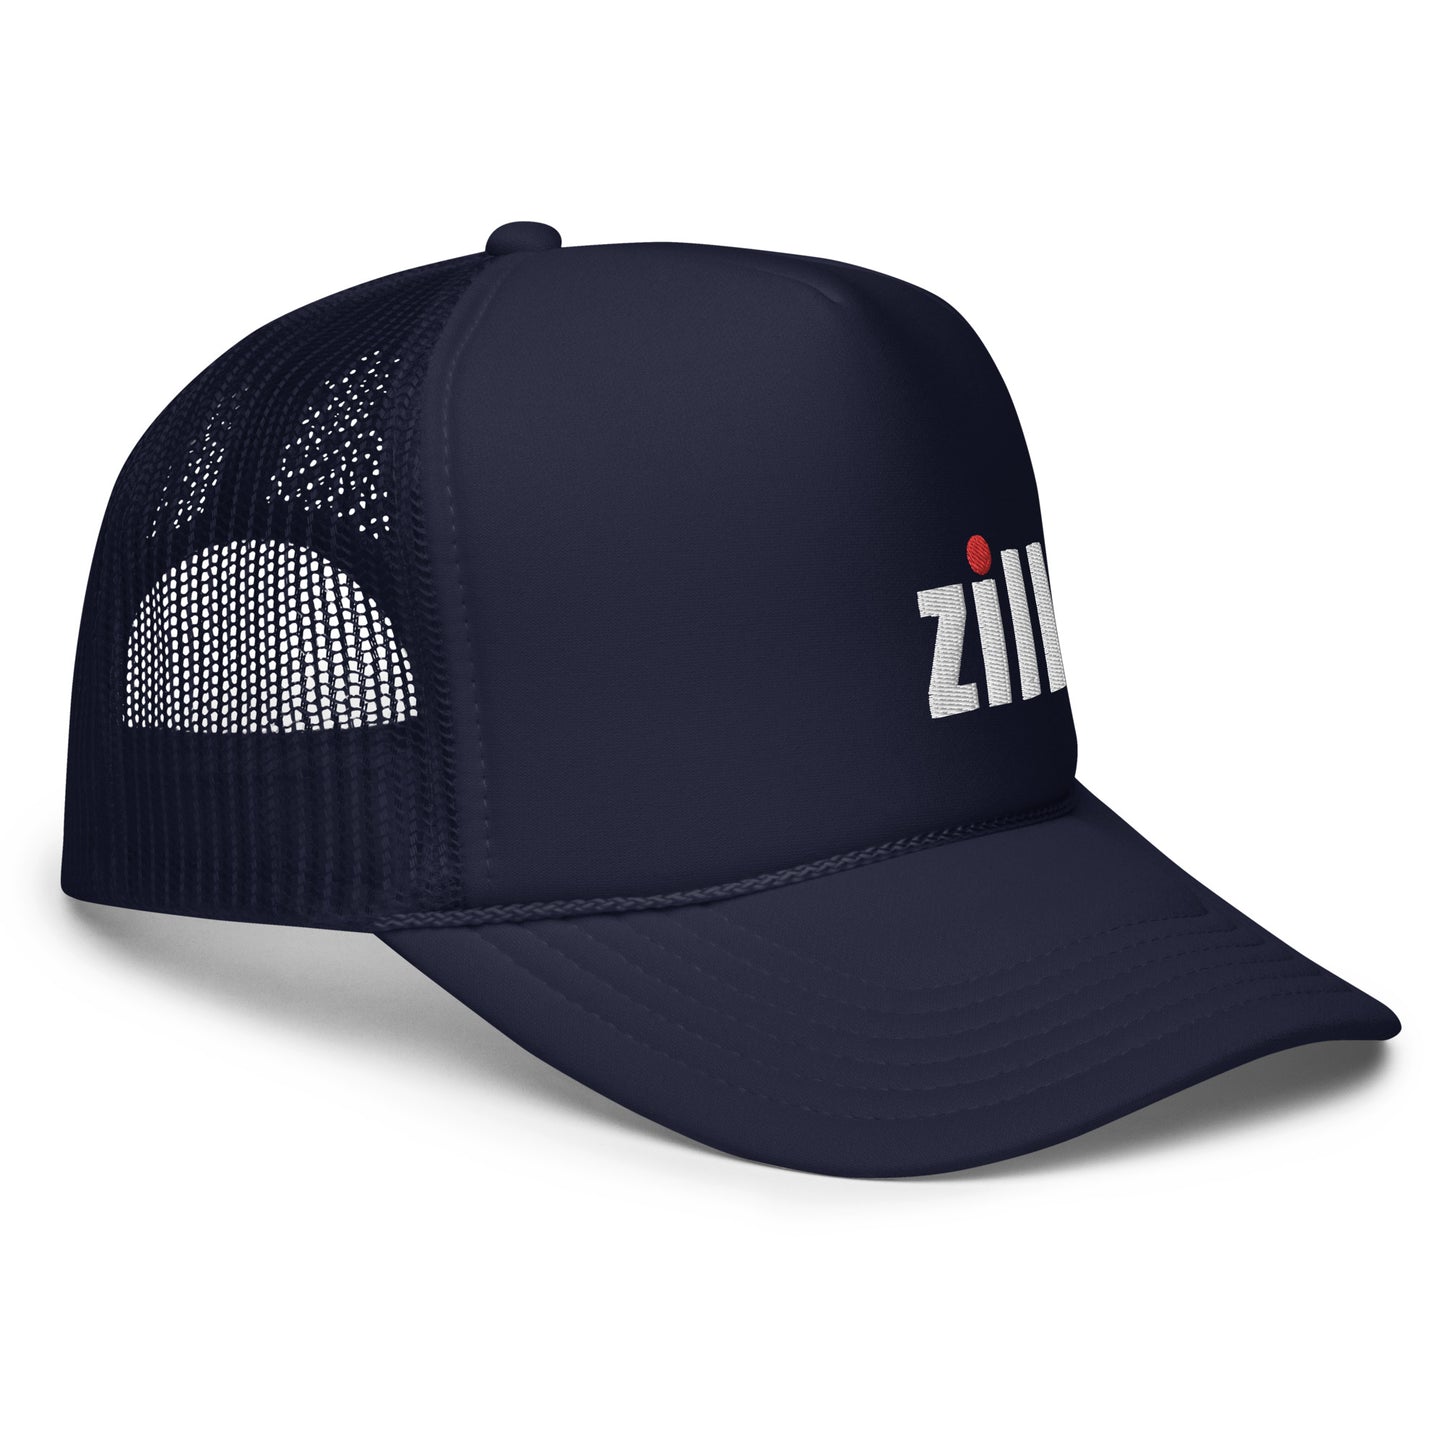 JDM Zilla Foam trucker hat